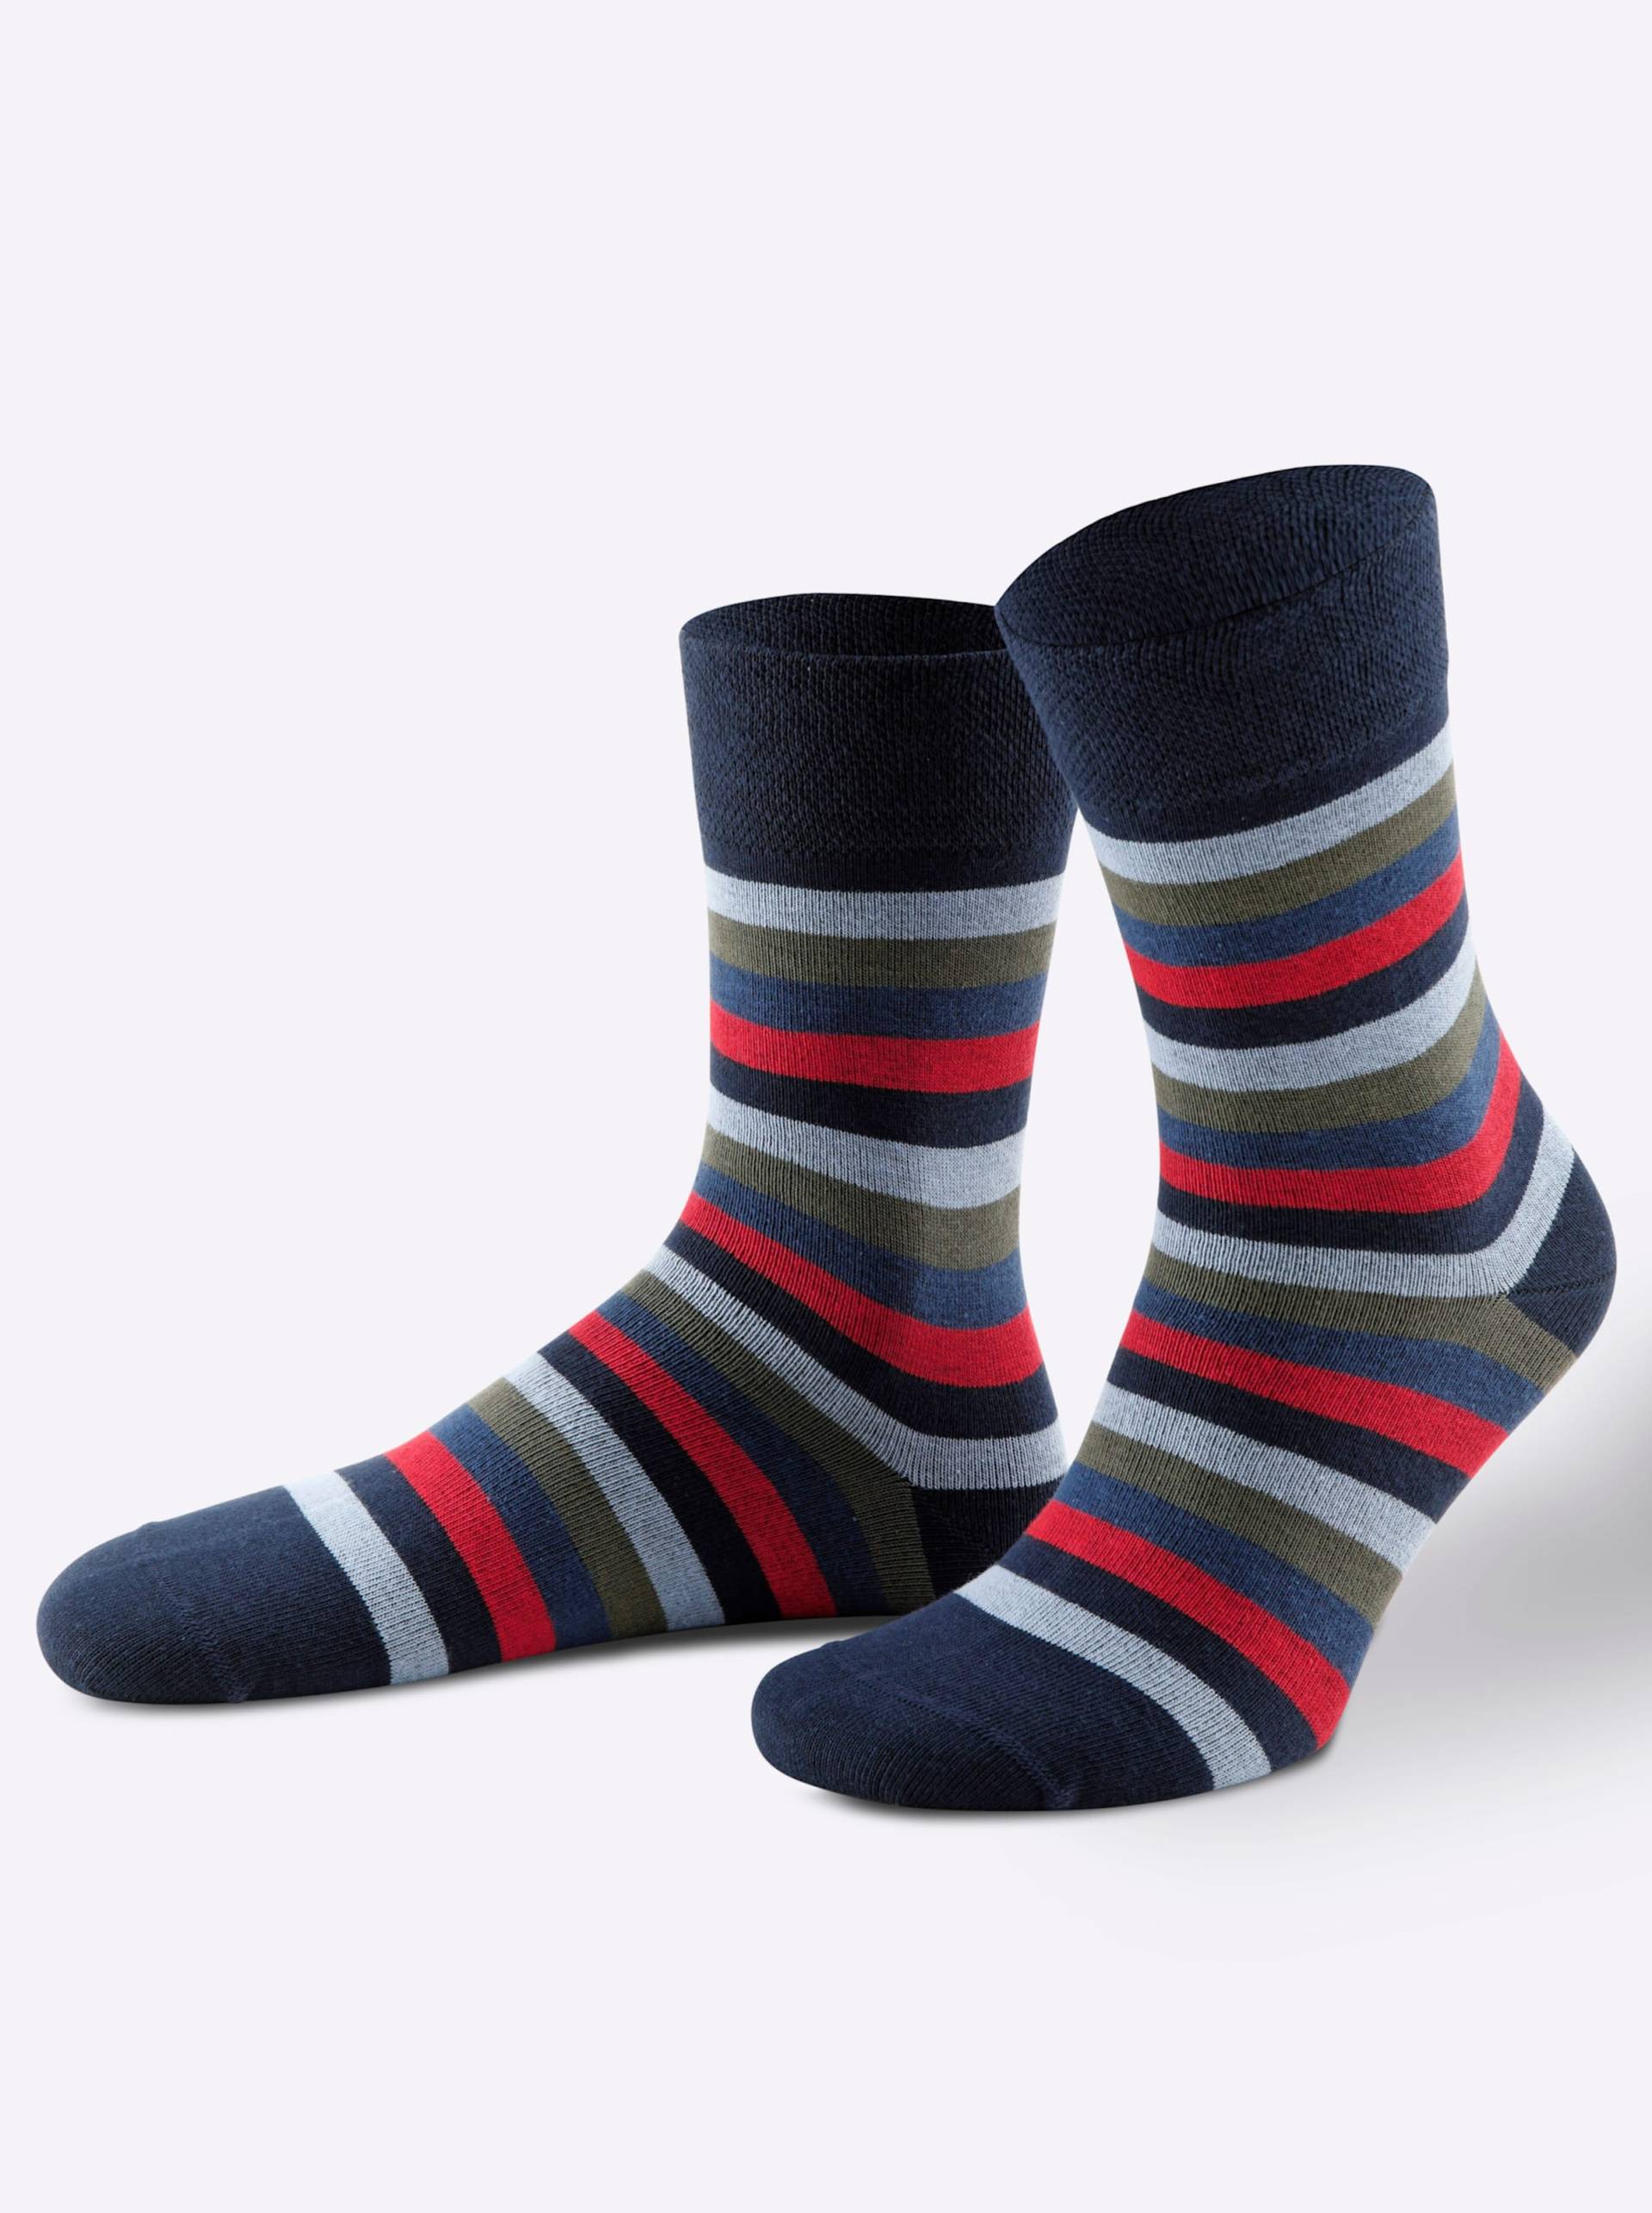 Socken in farbig-sortiert von wäschepur